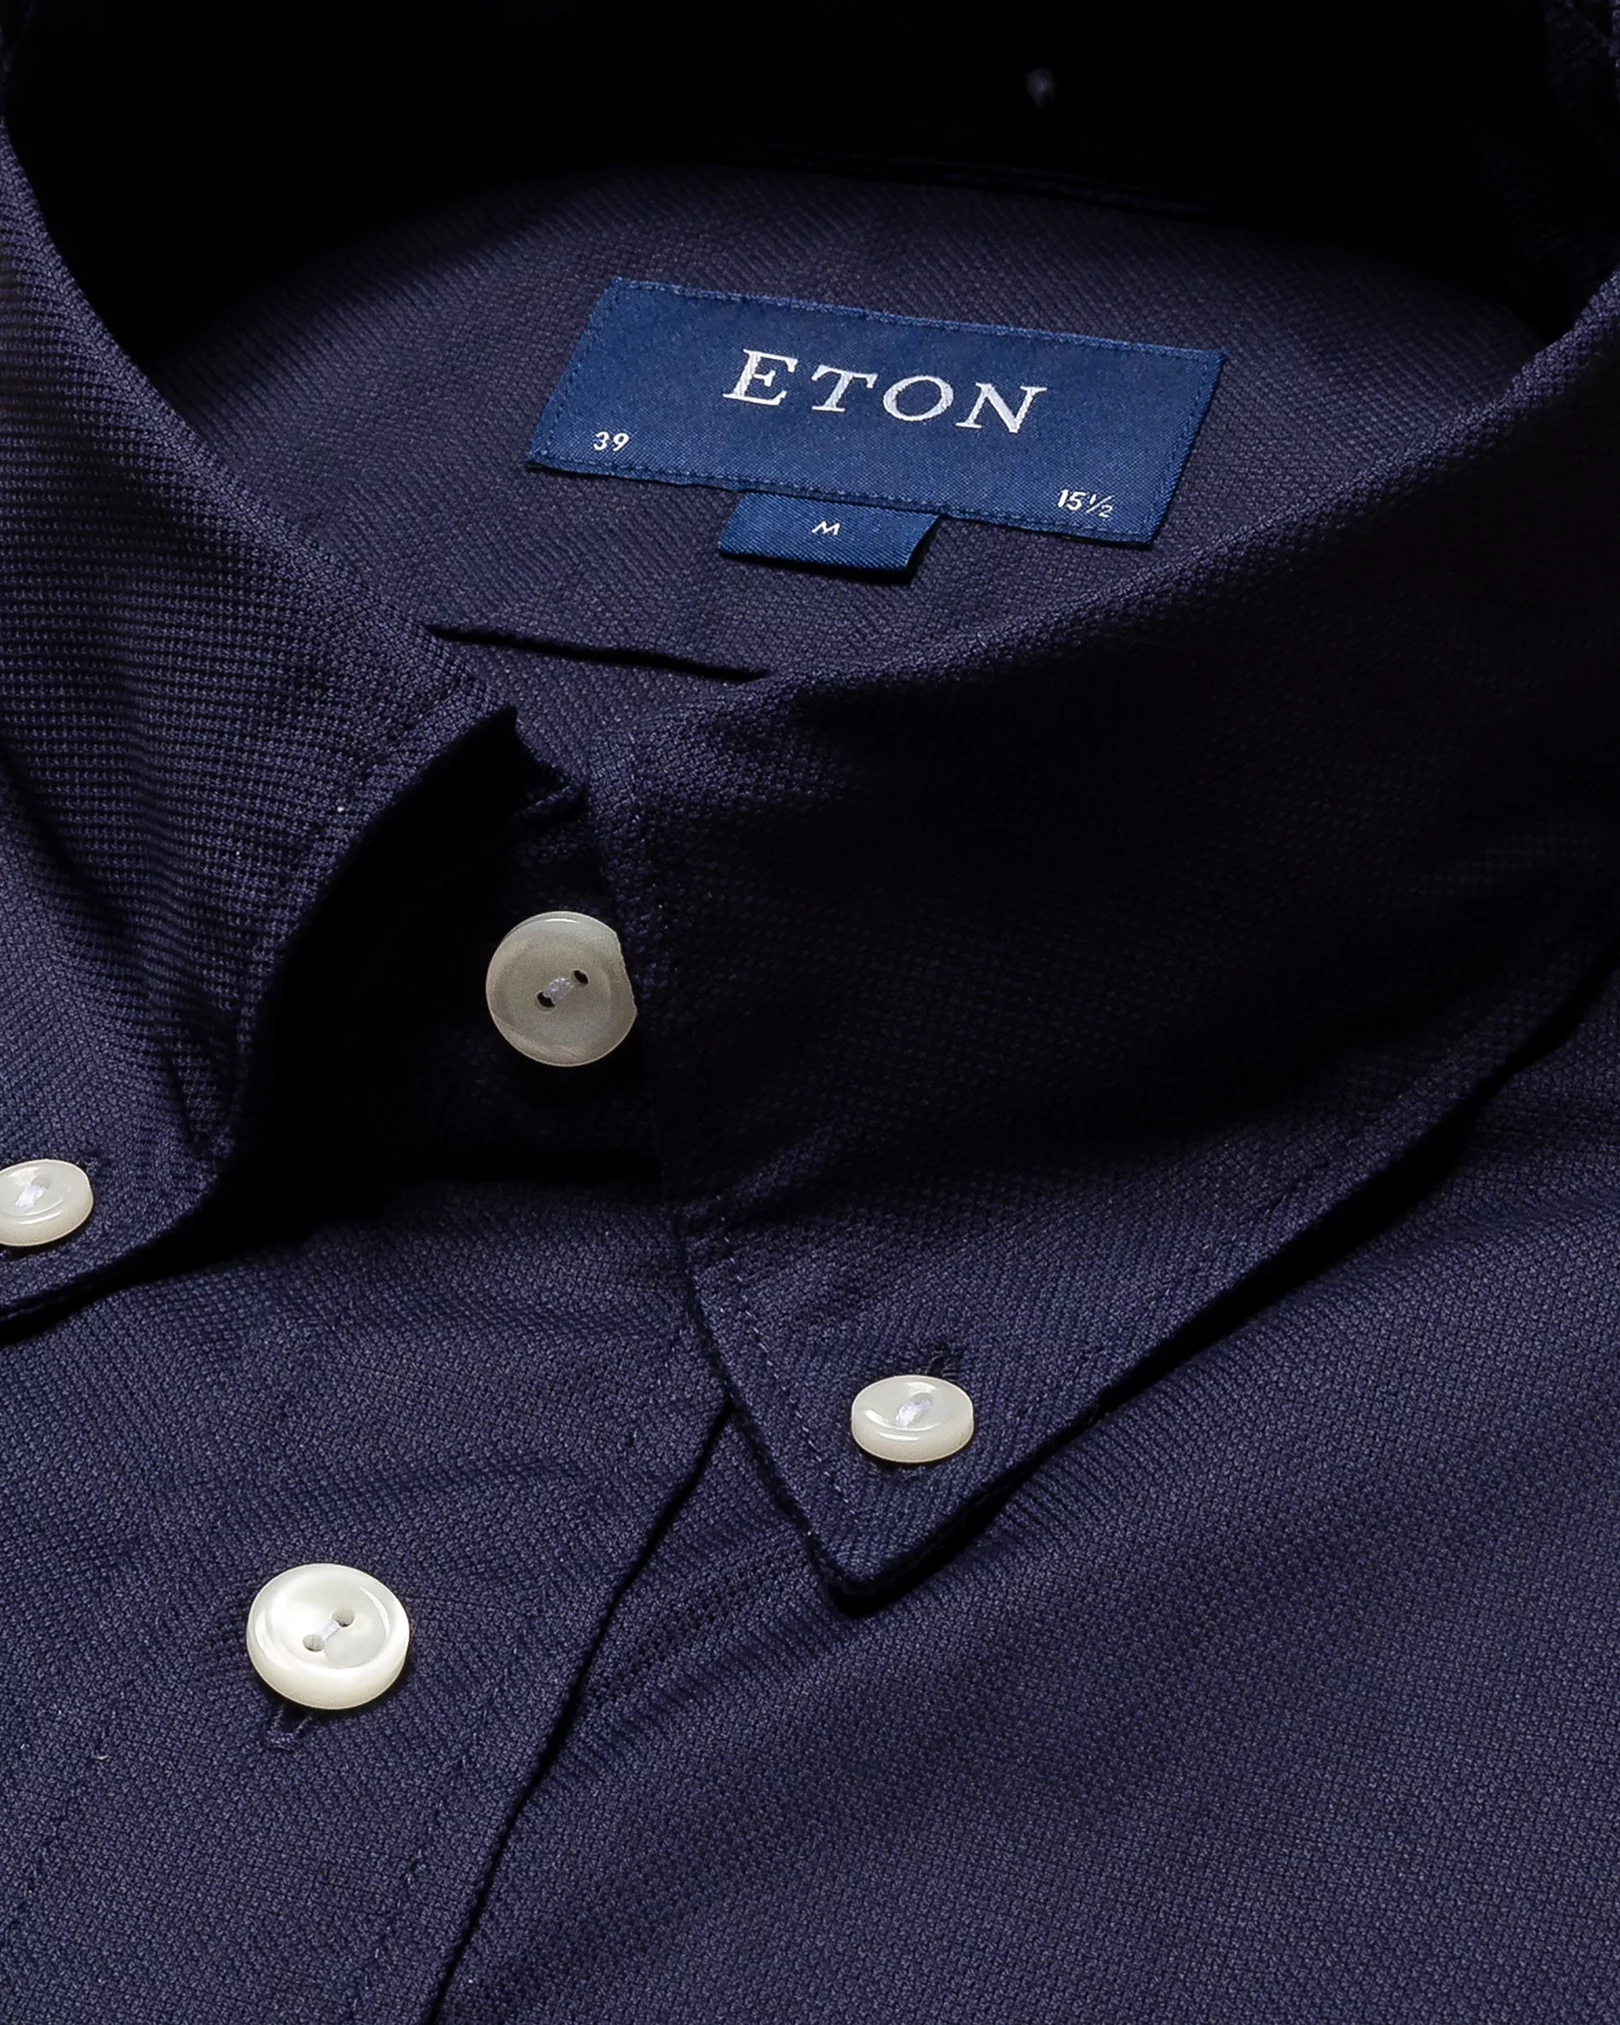 Eton - navy blue royal oxford tencel button down